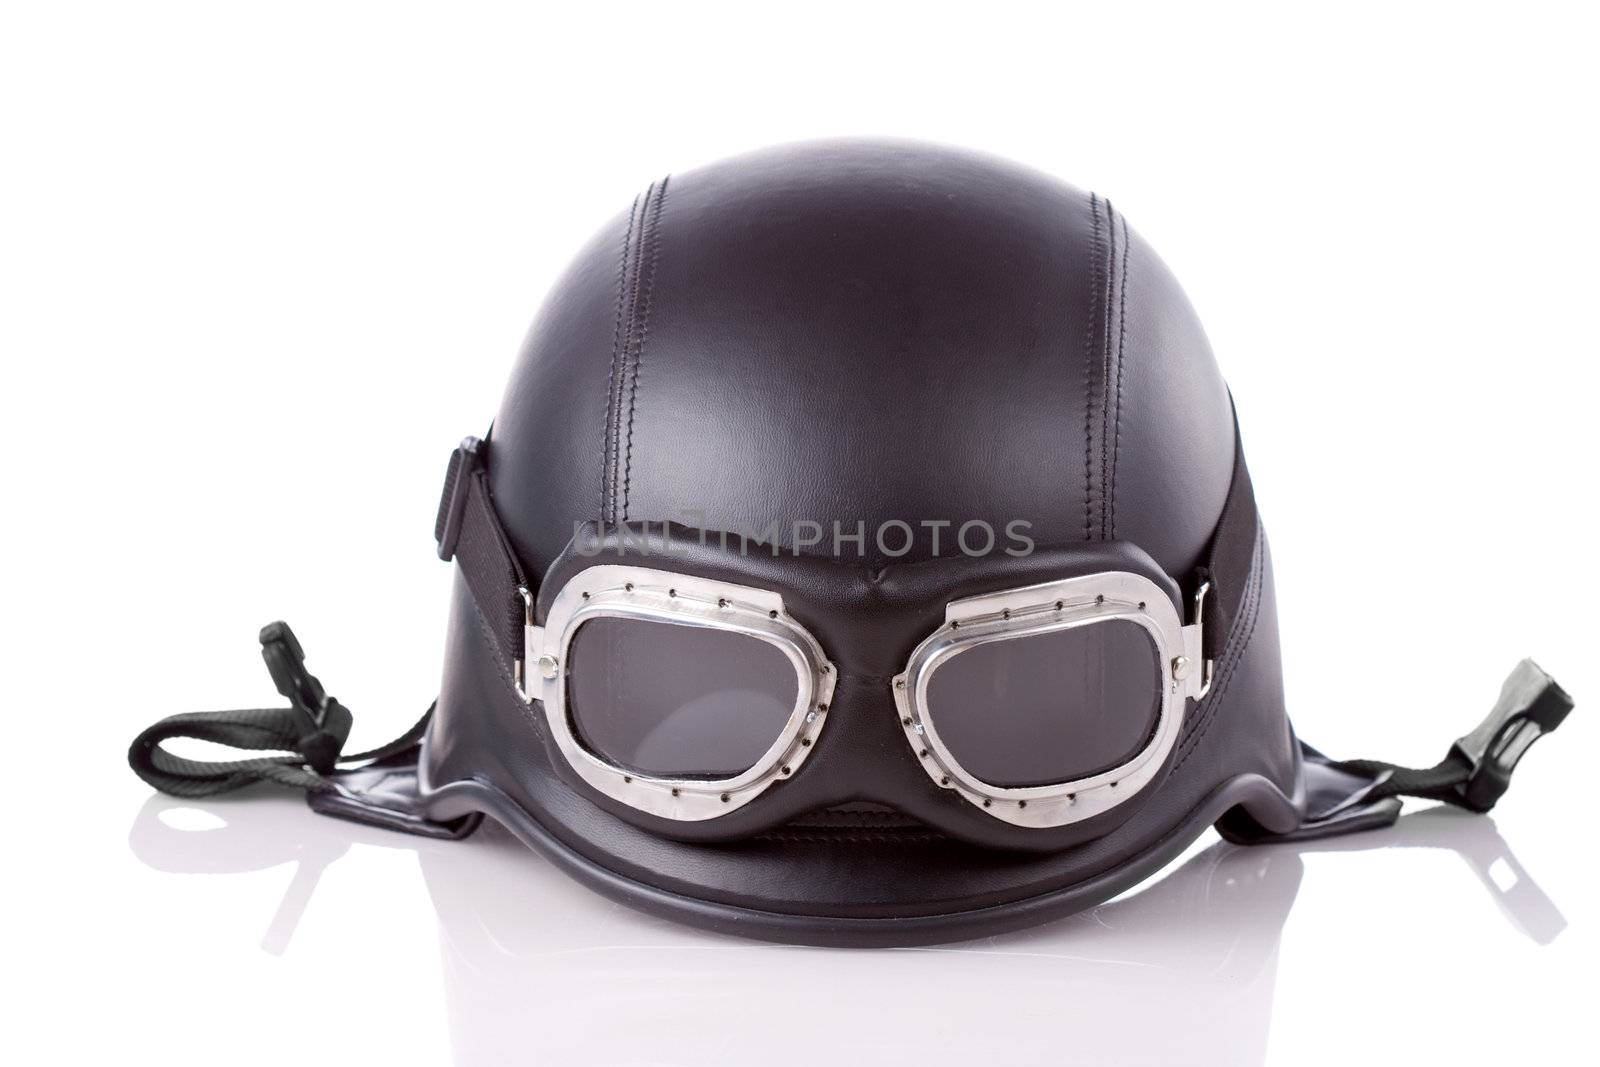 US army style motorcycle helmet by kokimk